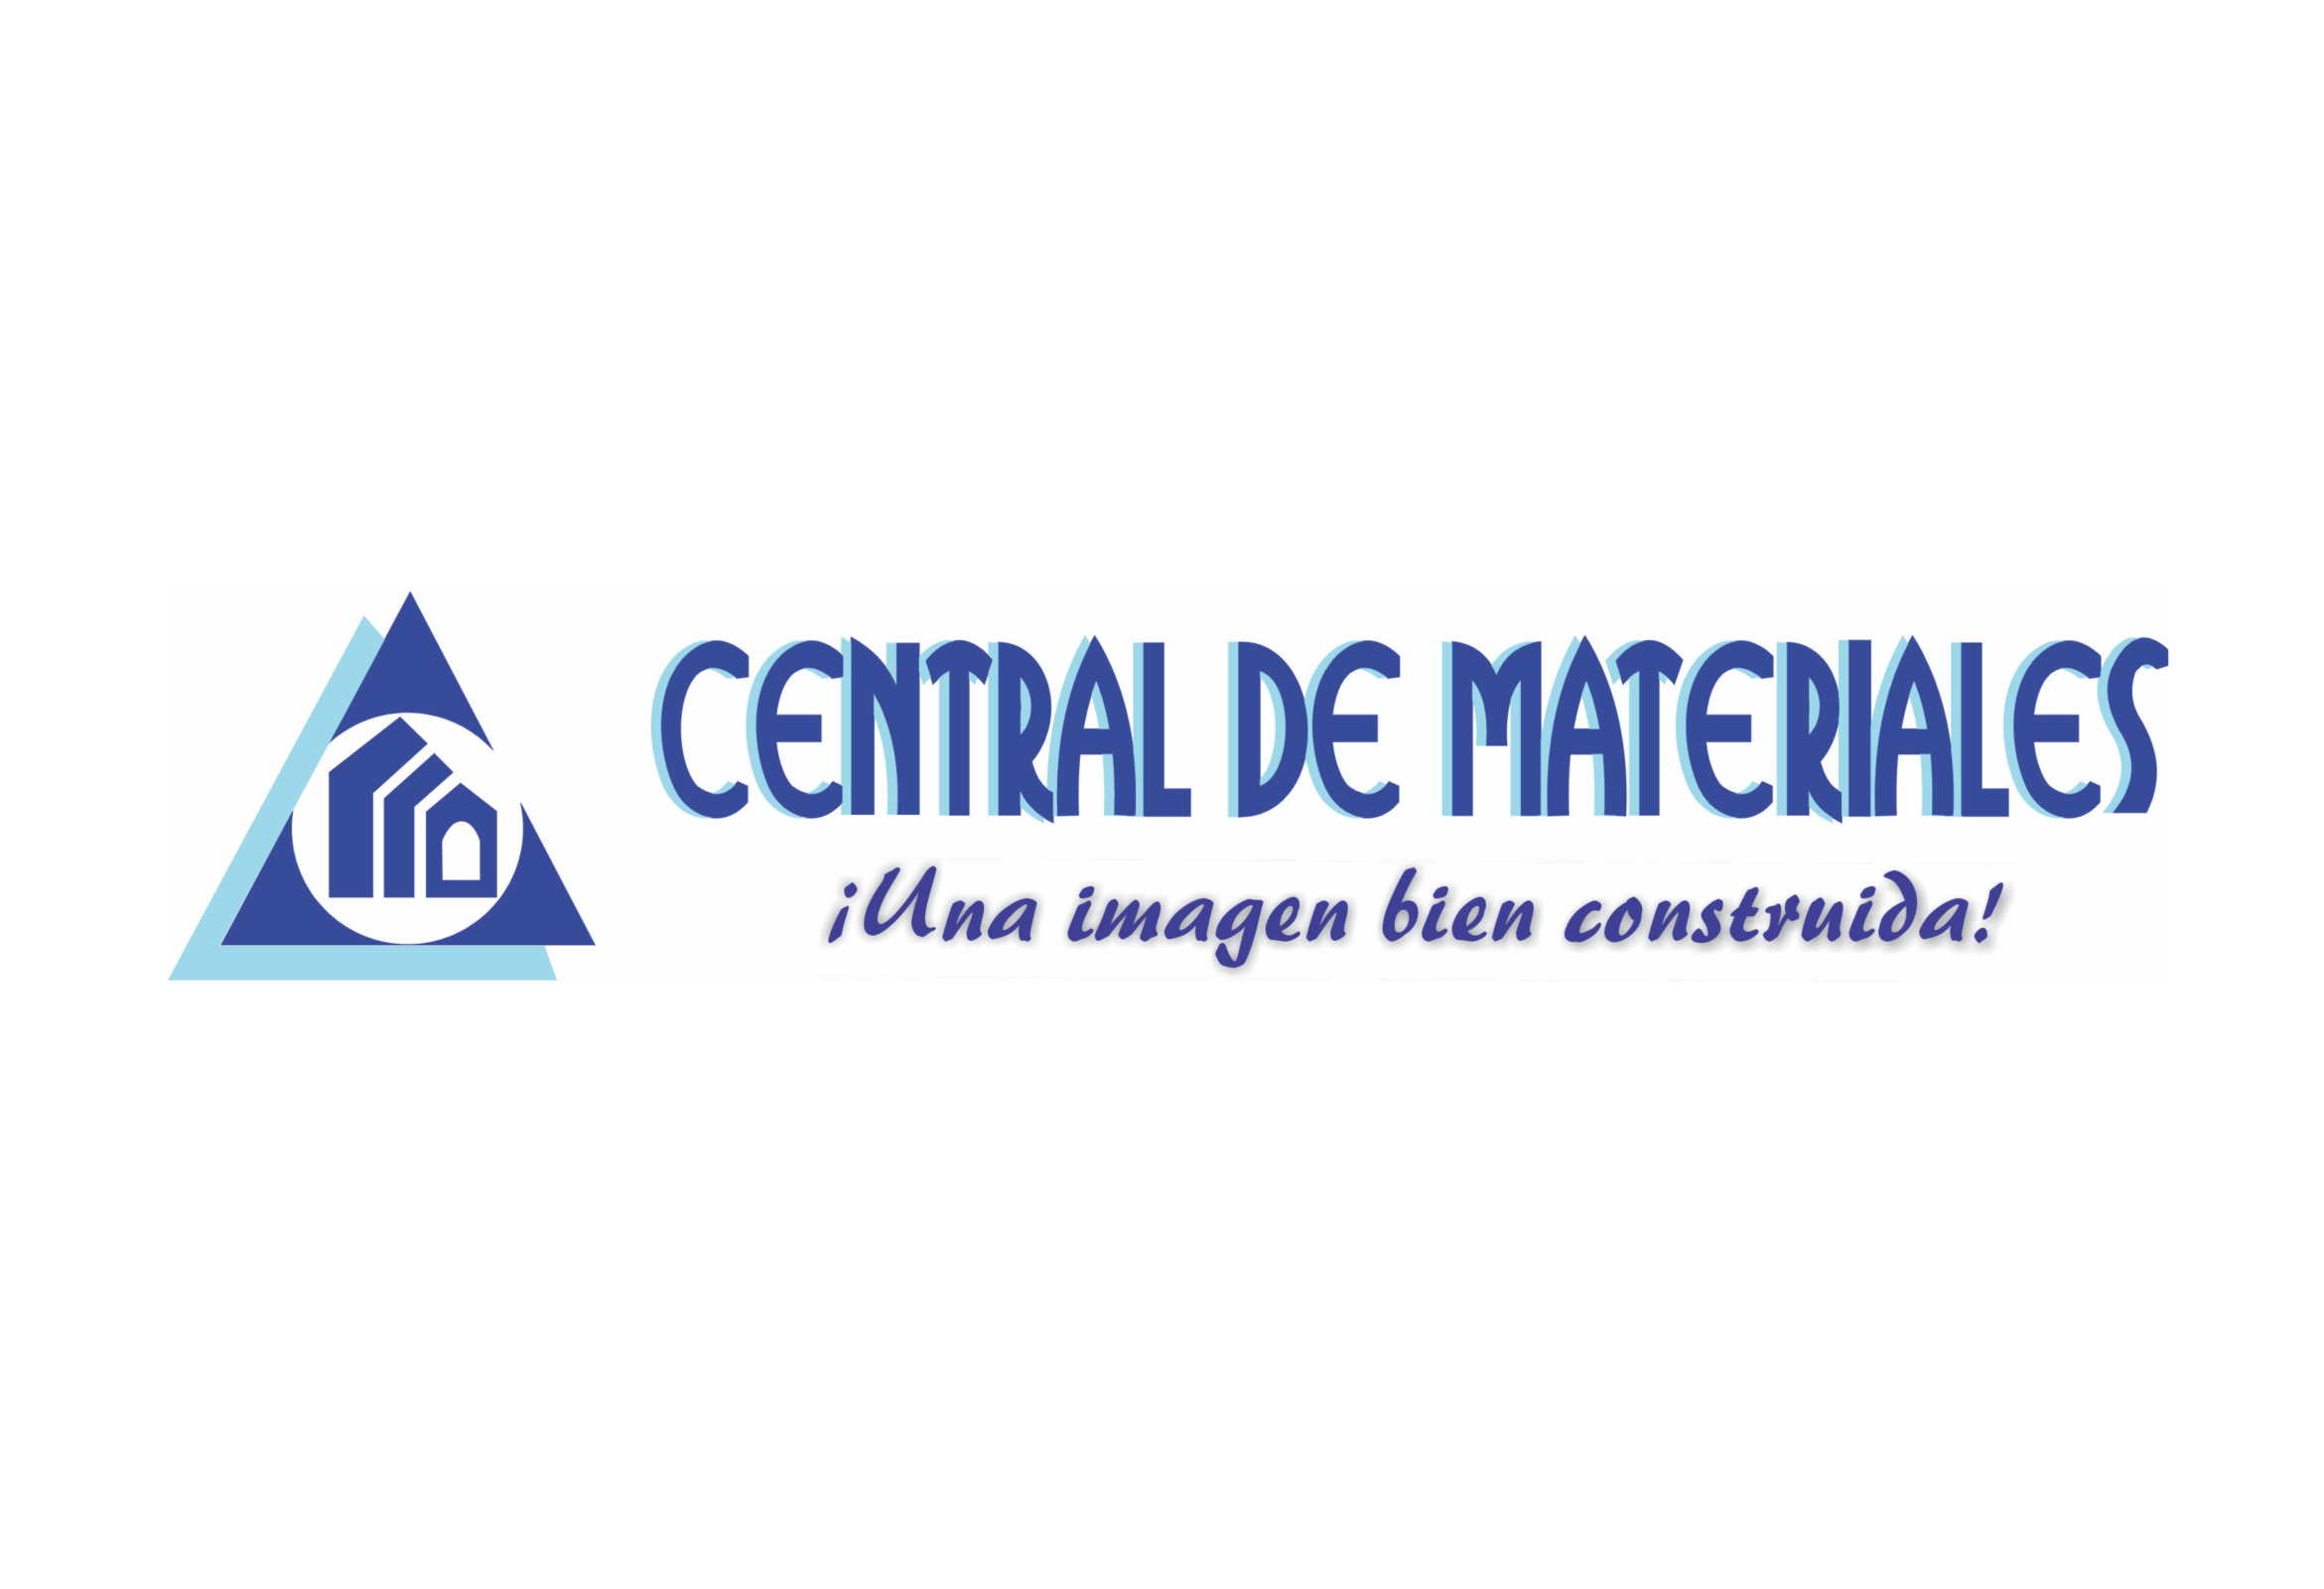 CENTRAL DE MATERIALES